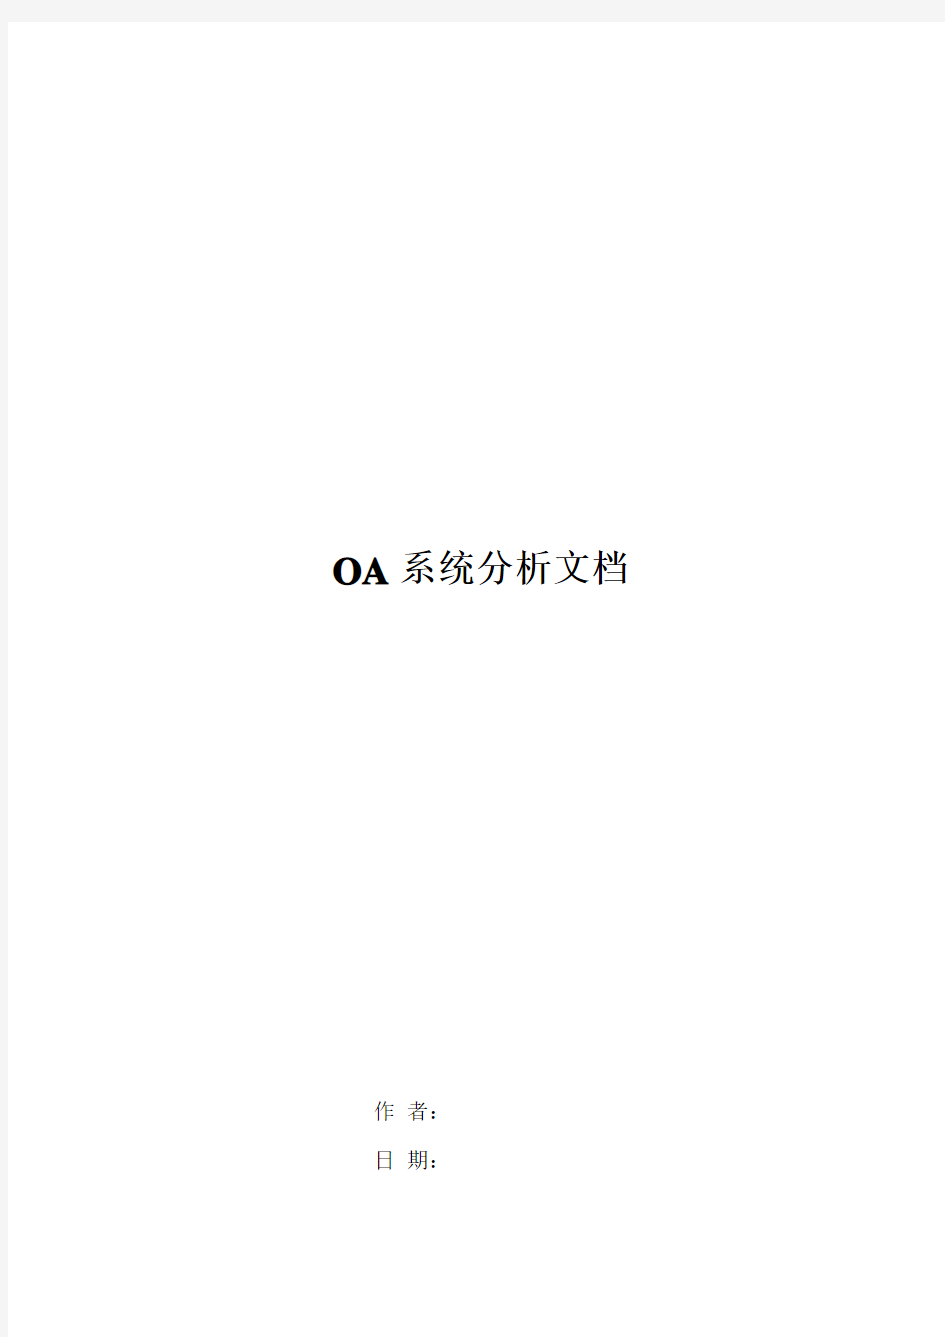 OA系统分析文档